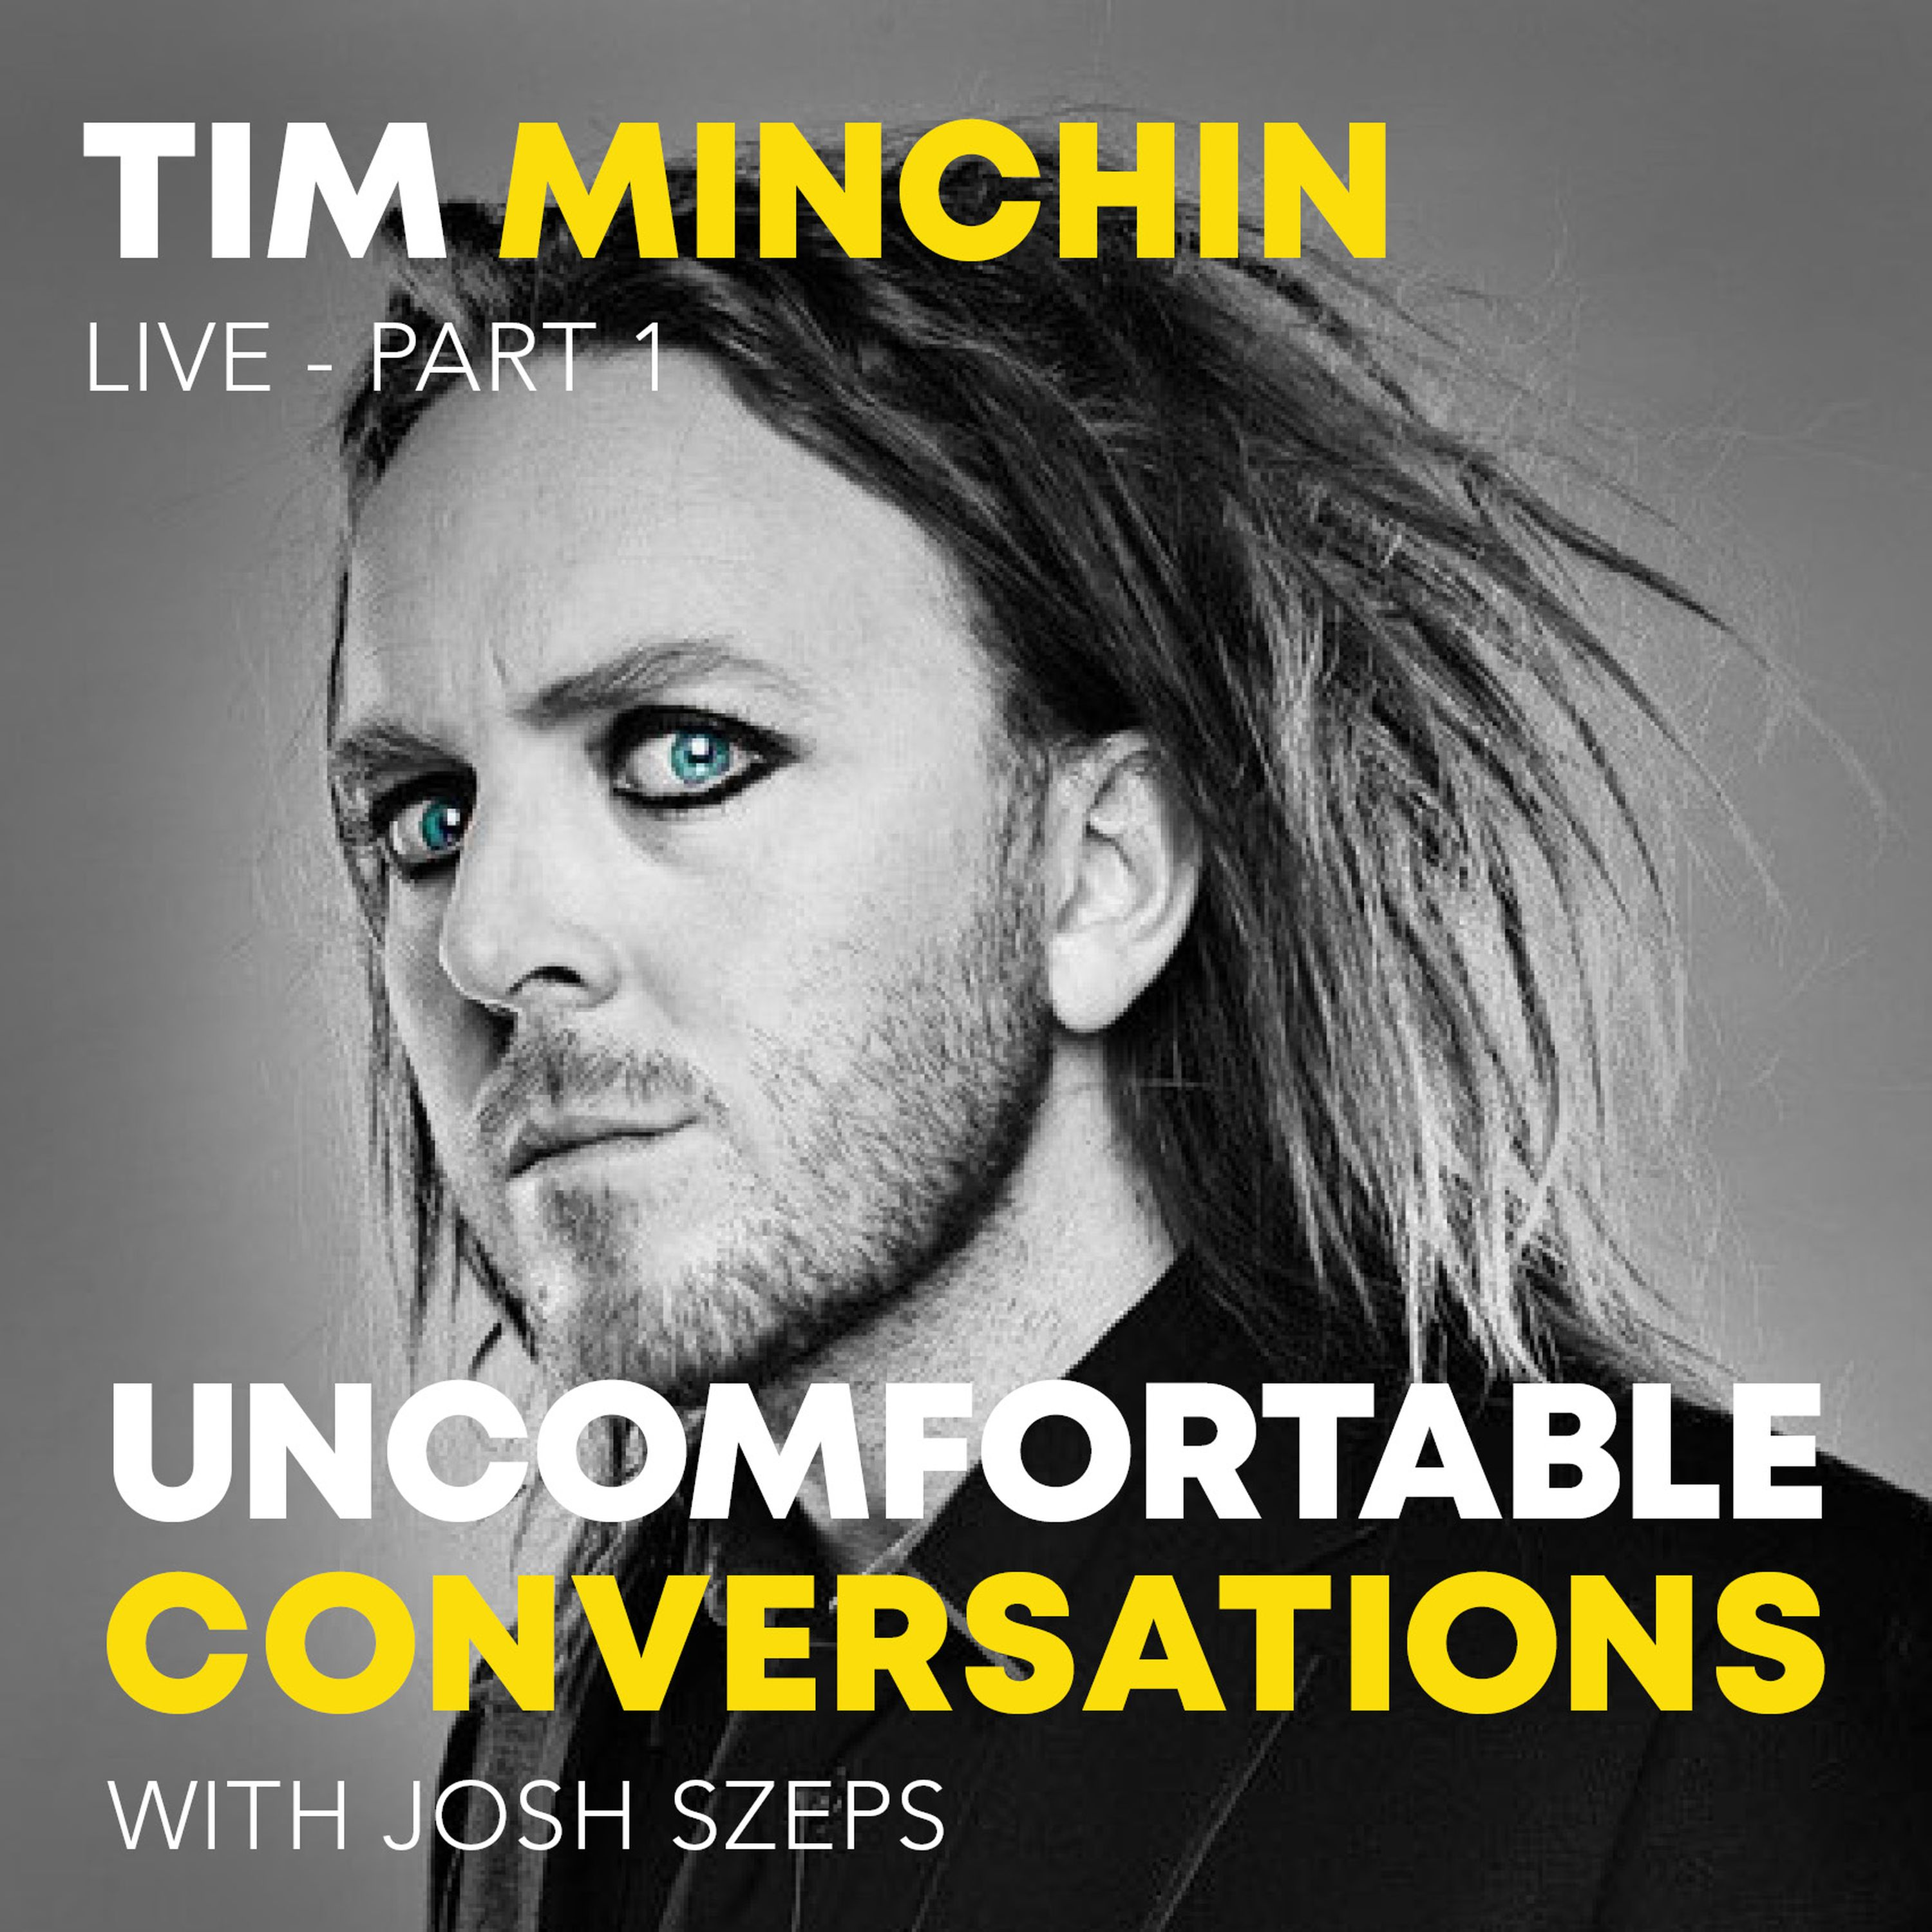 Tim Minchin Live - Part 1